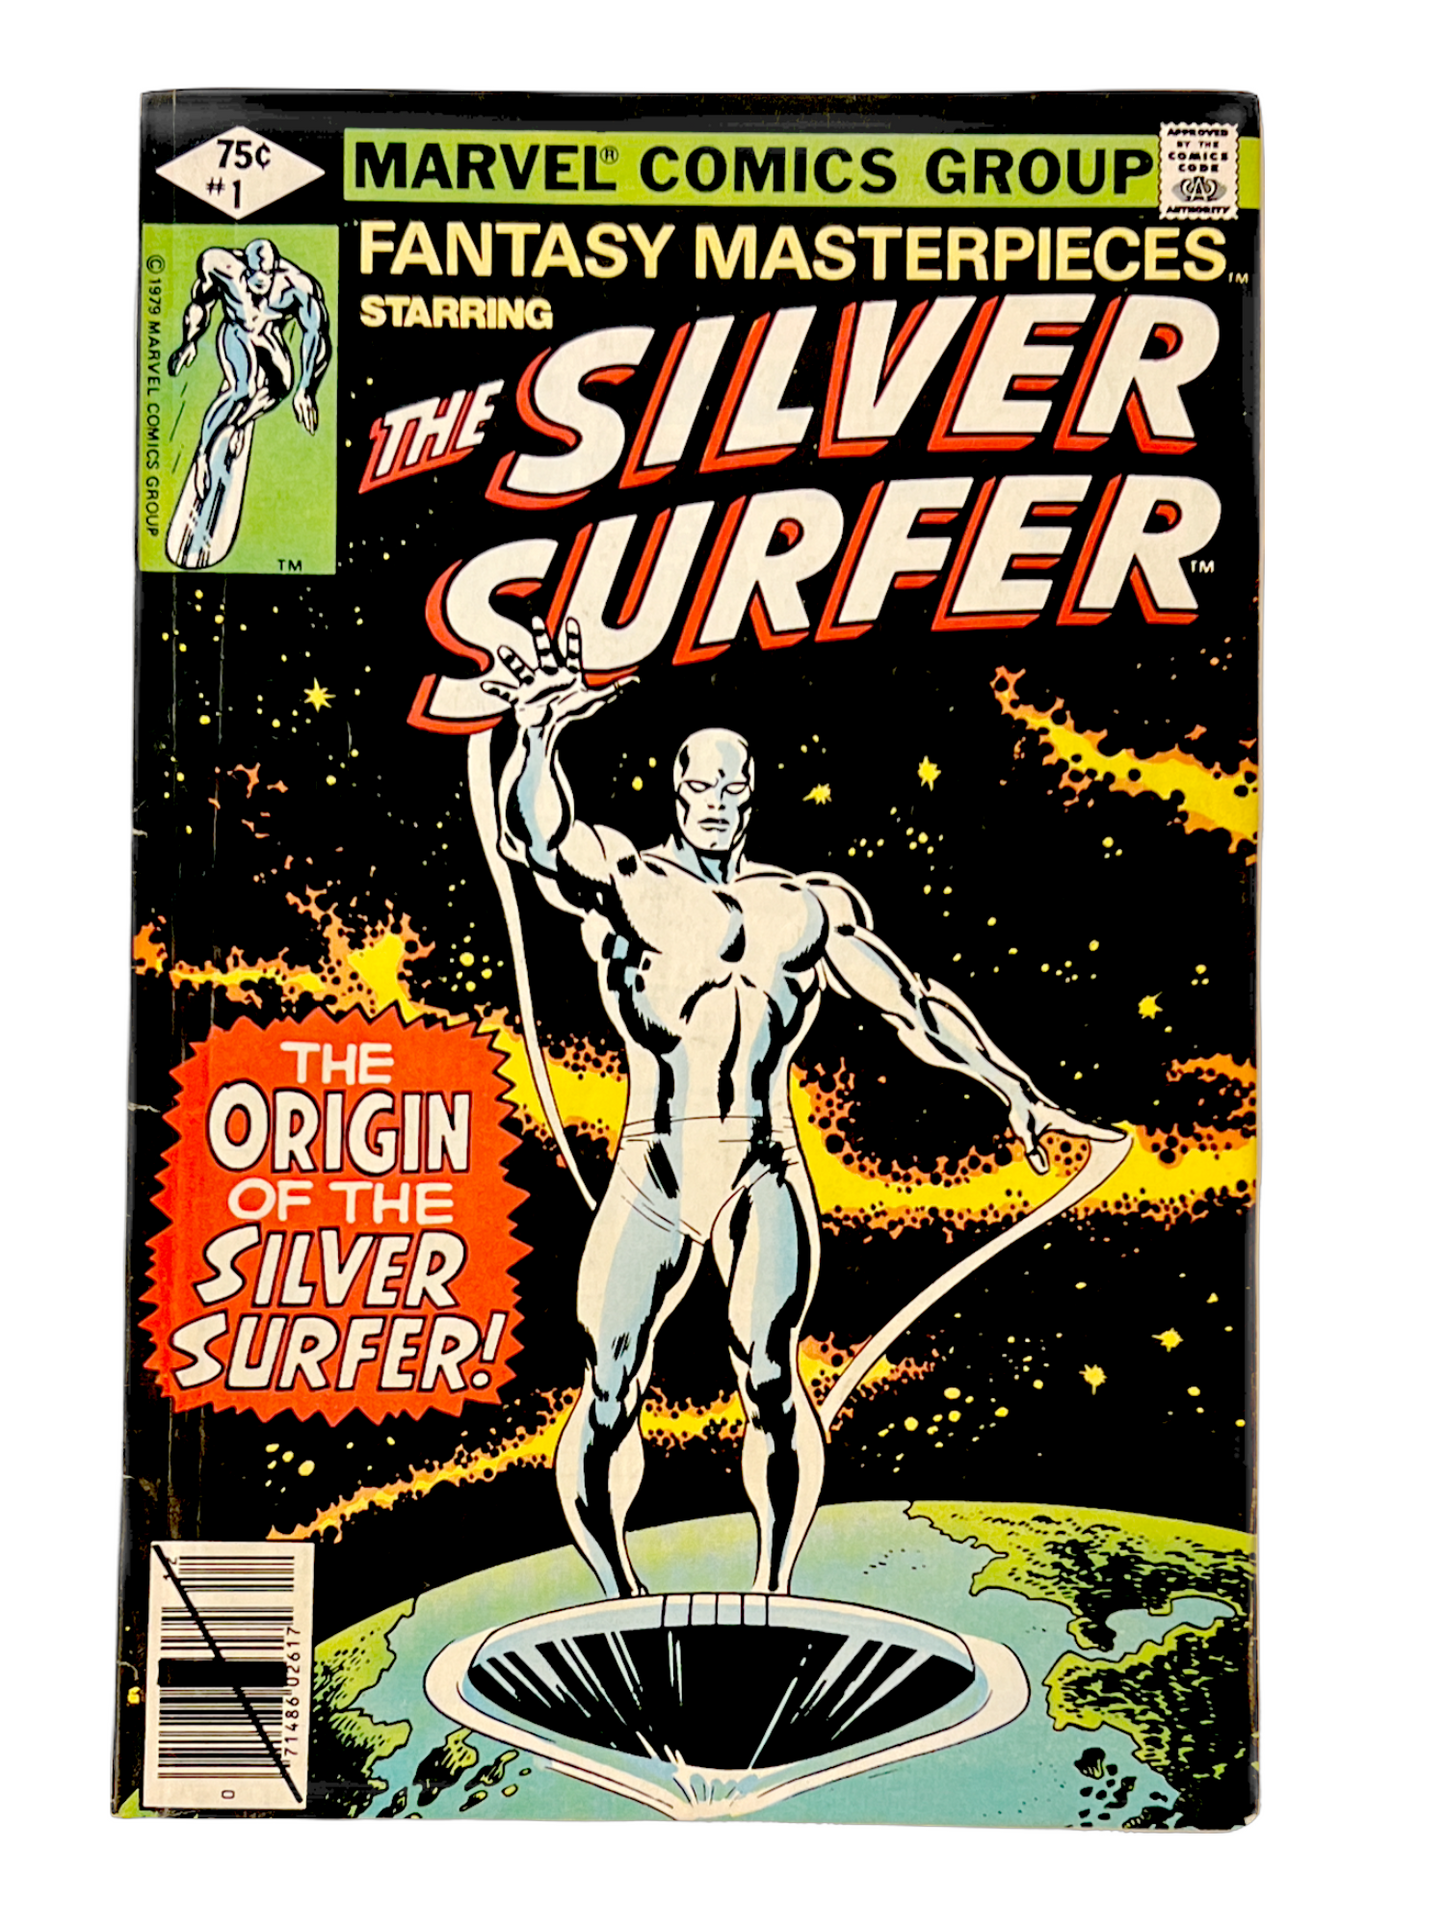 Fantasy Masterpieces: Silver Surfer #1